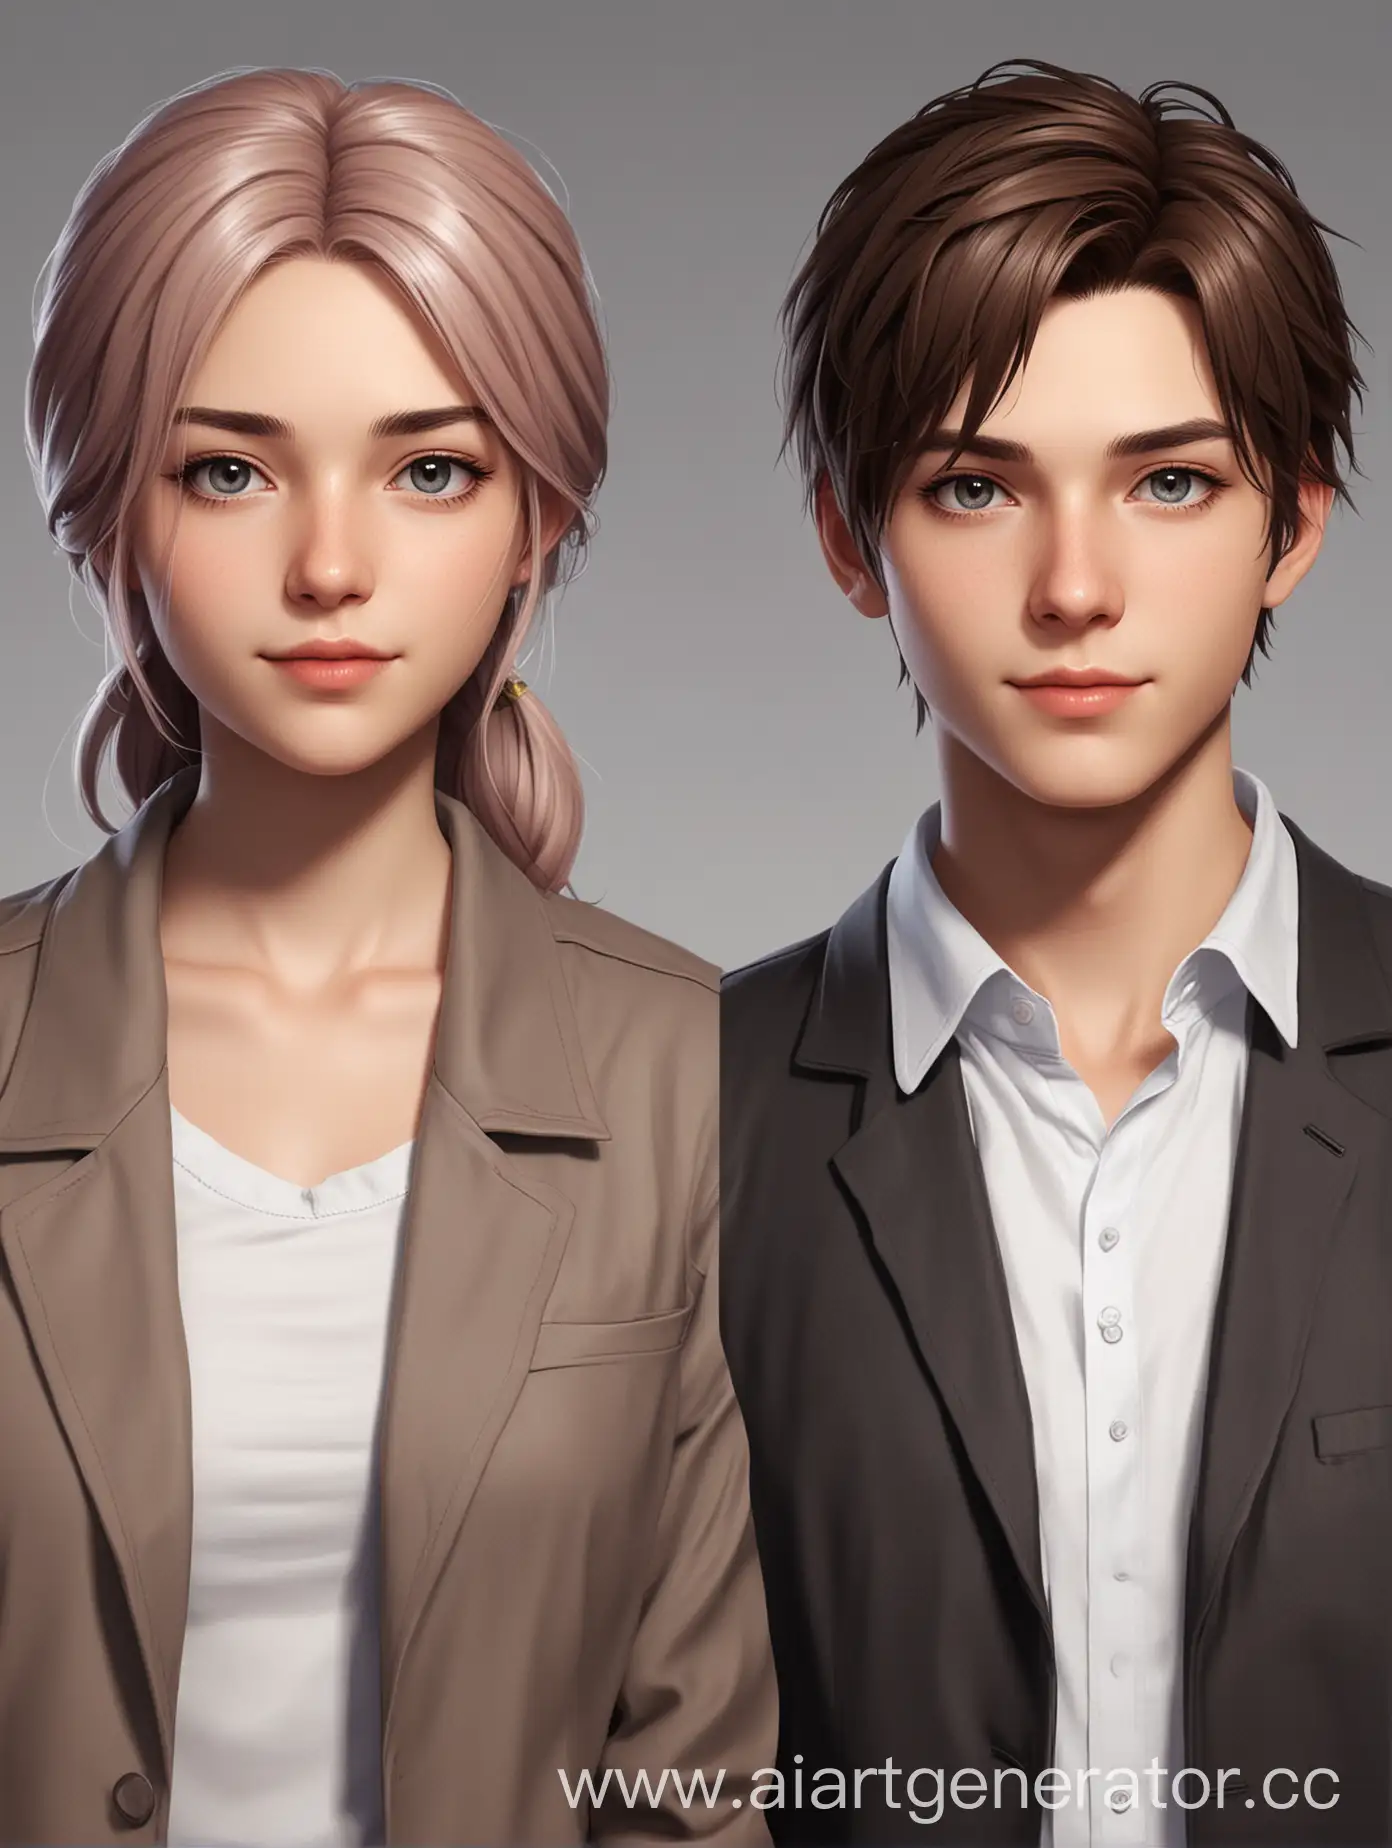 Interactive-Visual-Novel-Characters-Girl-and-Boy